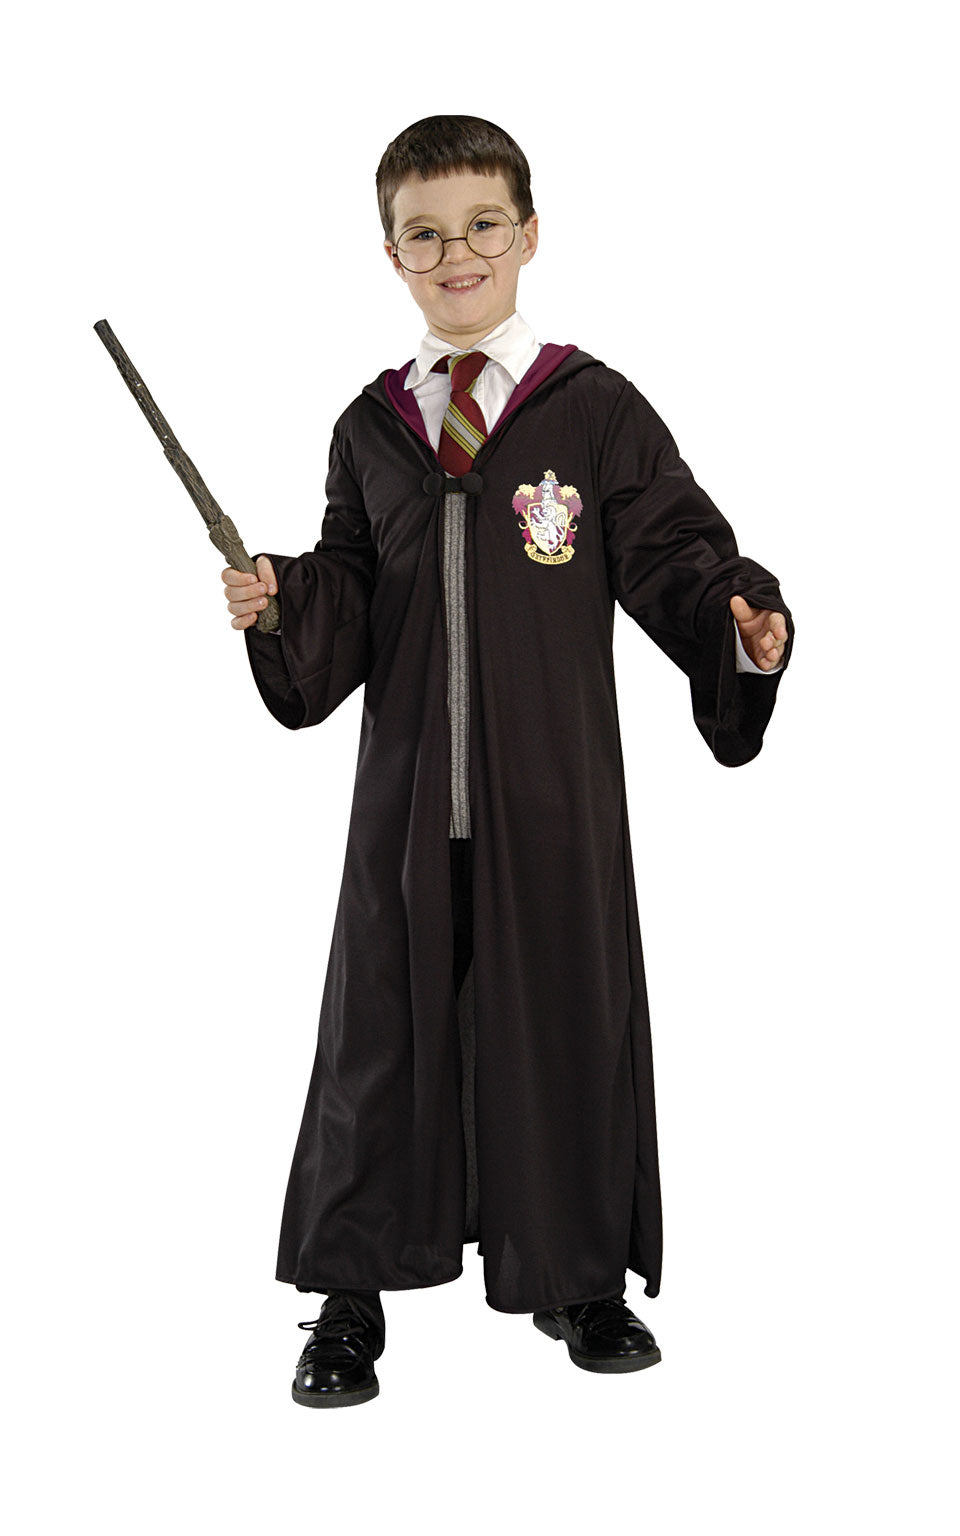 Childrens Harry Potter Costume Kit